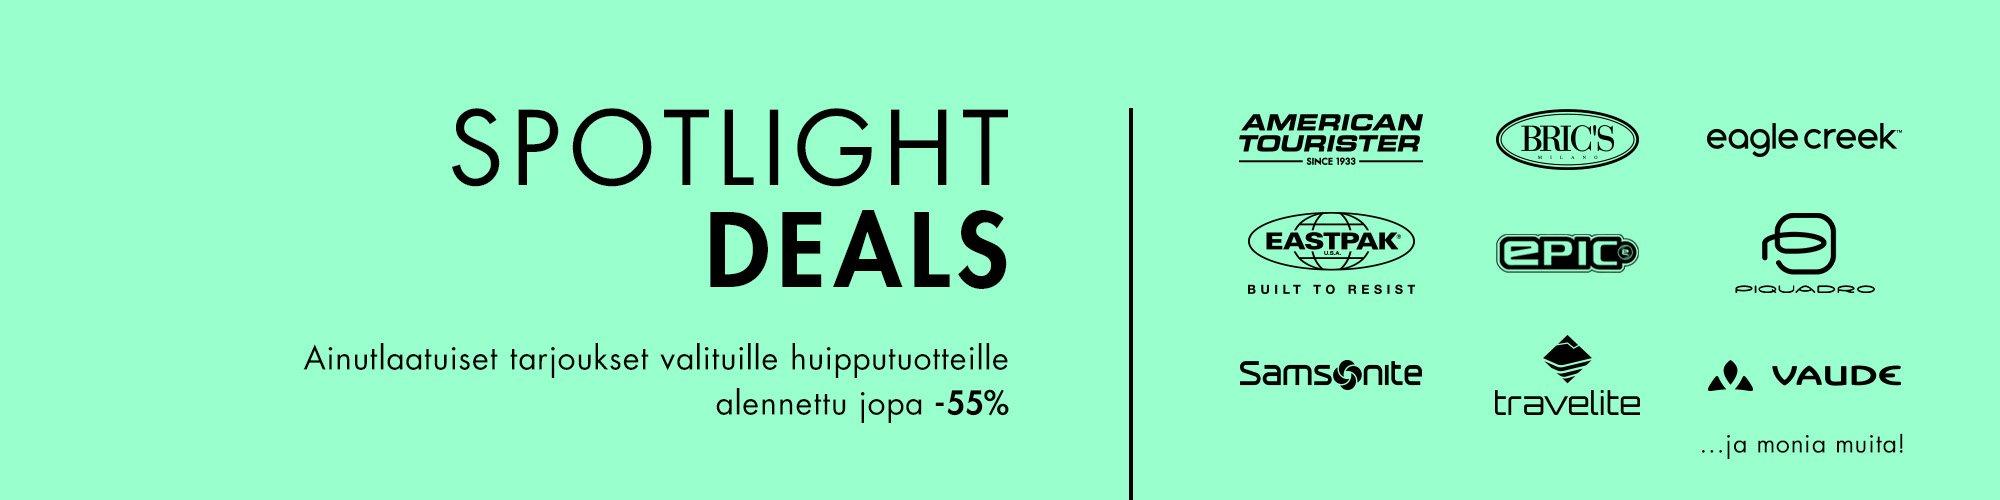 Spotlight Deals